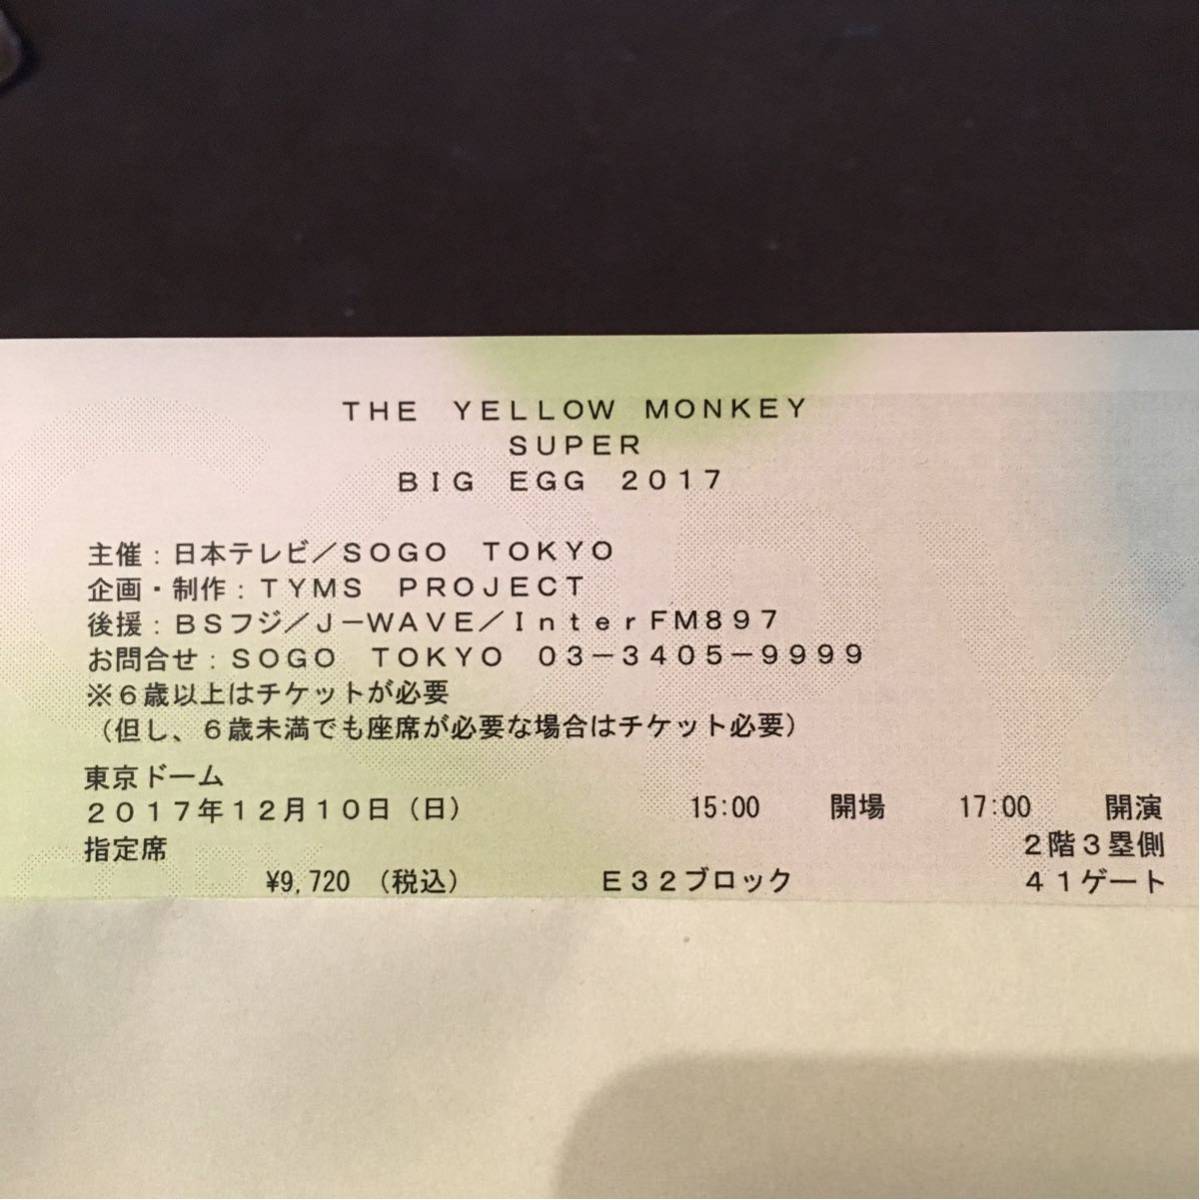 12/10(日) THE YELLOW MONKEY イエローモンキー 東京ドーム 指定席 ペア2枚価格 送料無料